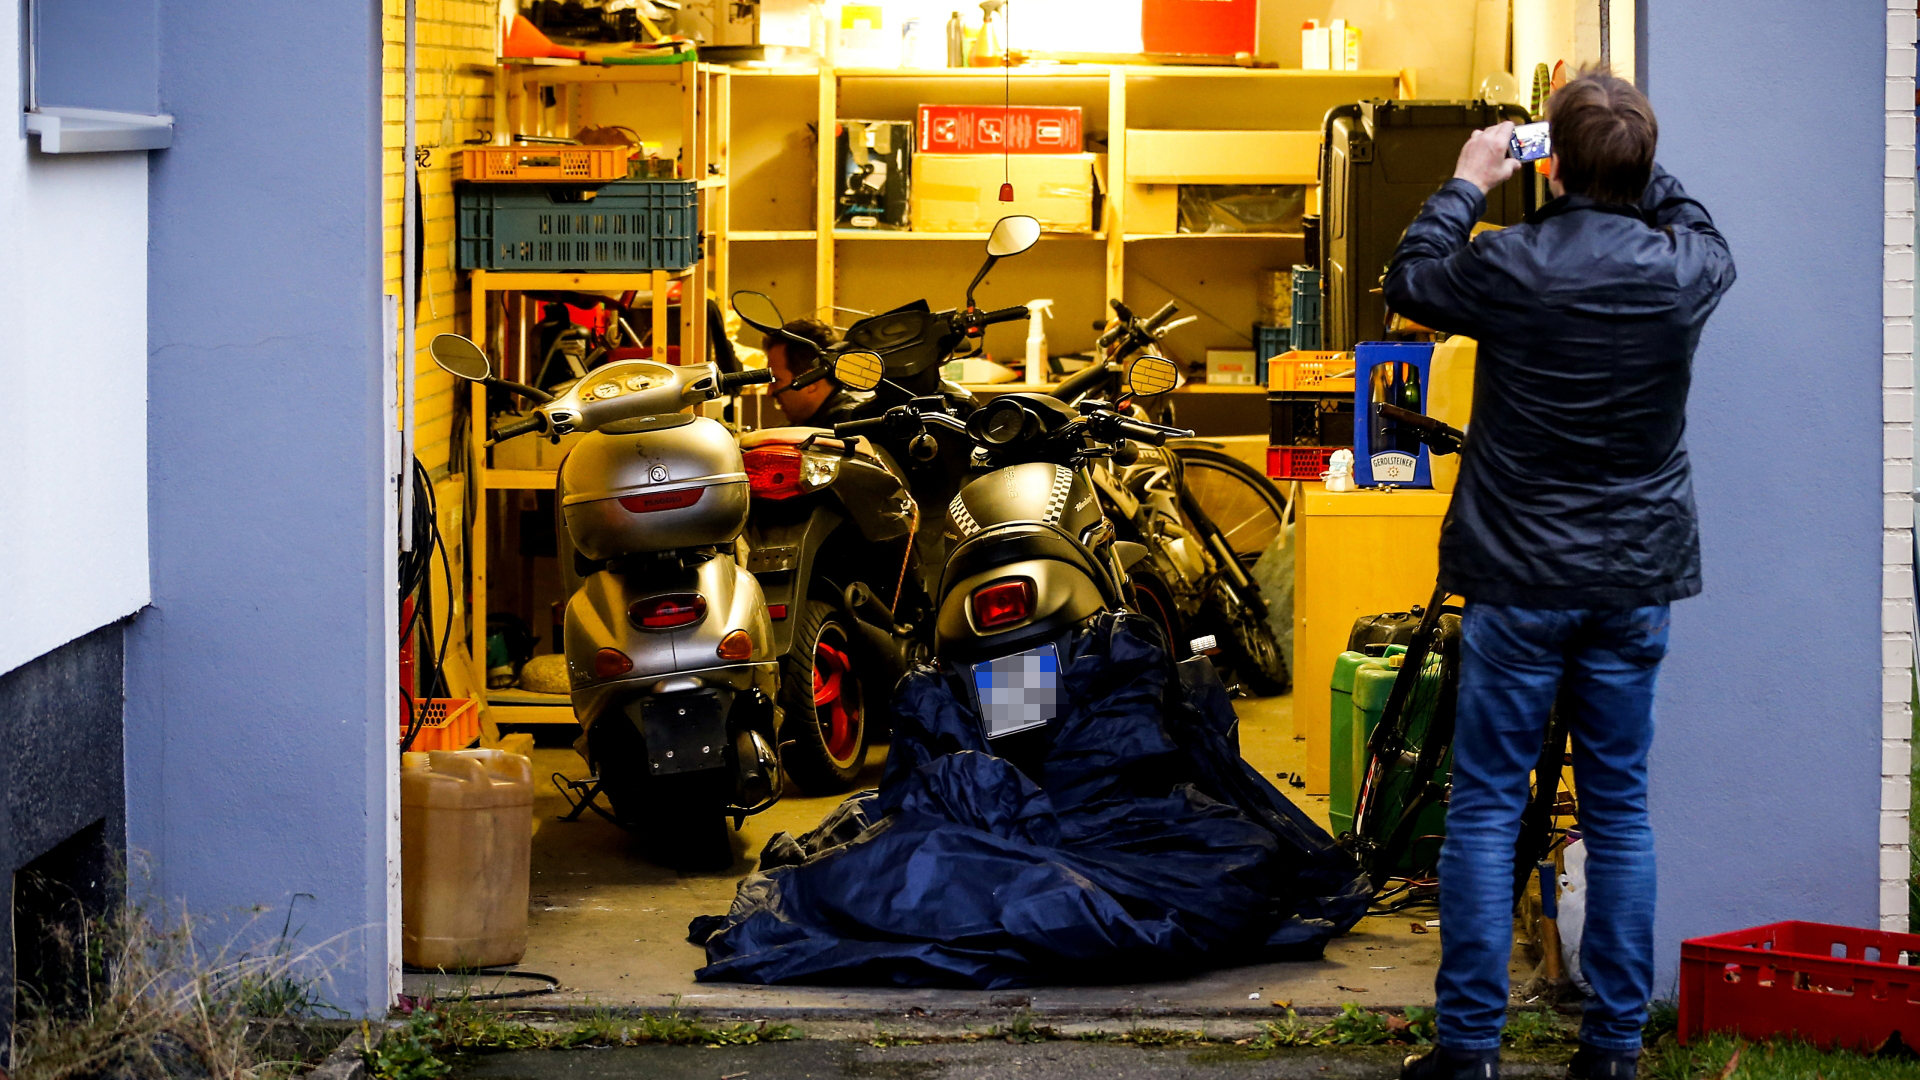 Ein Polizist macht Fotos von einer Garage, in der Motorräder stehen | Bildquelle: SASCHA STEINBACH/EPA-EFE/REX/Shu